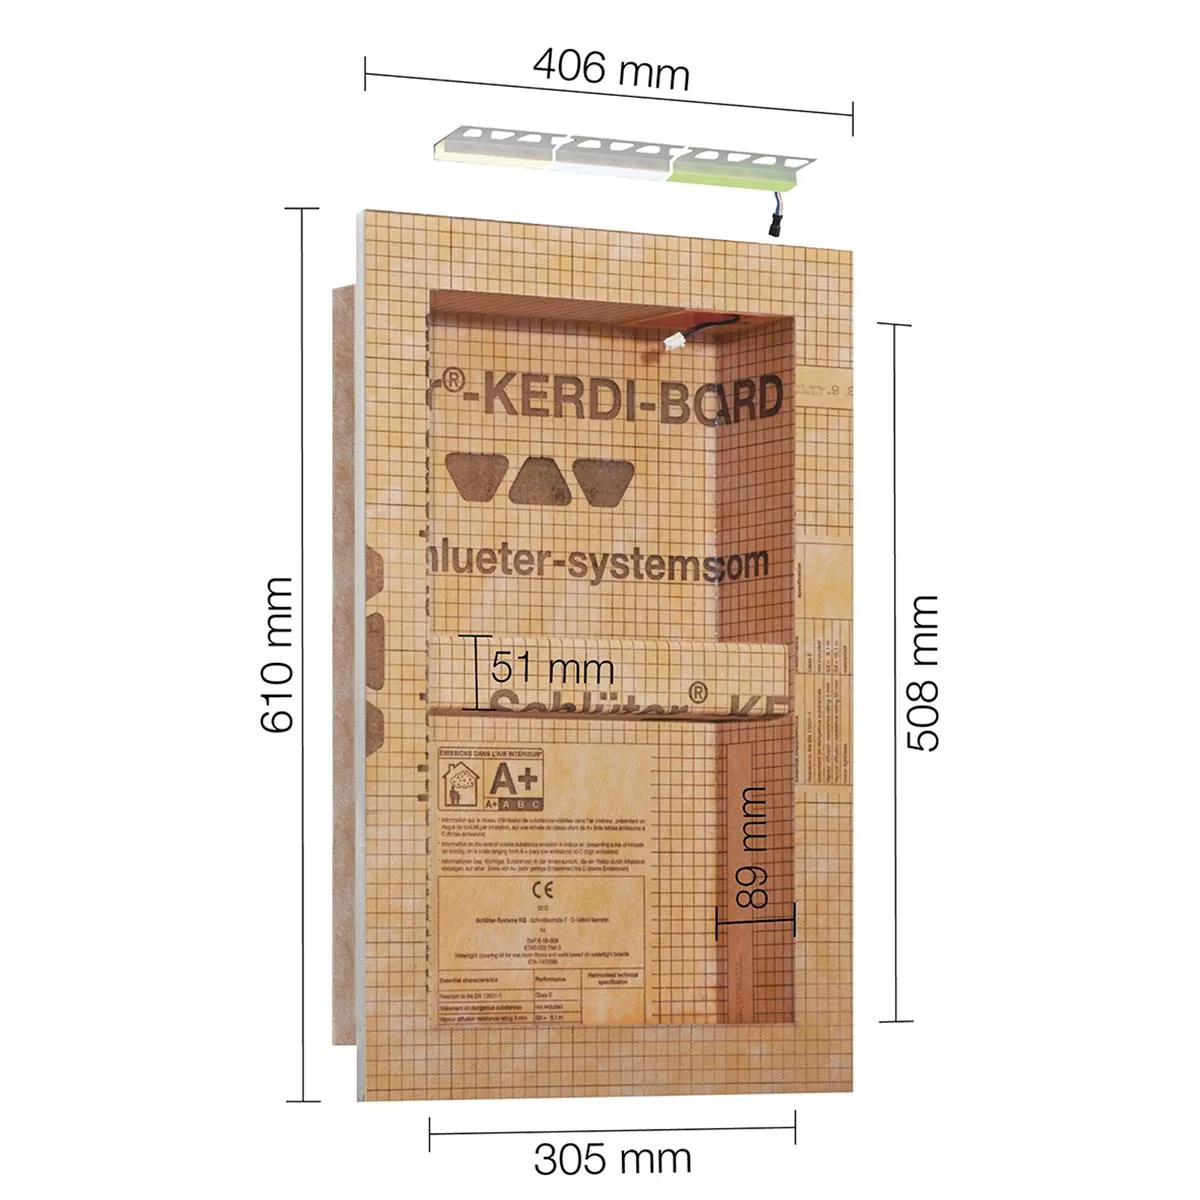 Schlüter Kerdi Board NLT niche setti LED-valaistus neutraali valkoinen 30,5x50,8x0,89 cm